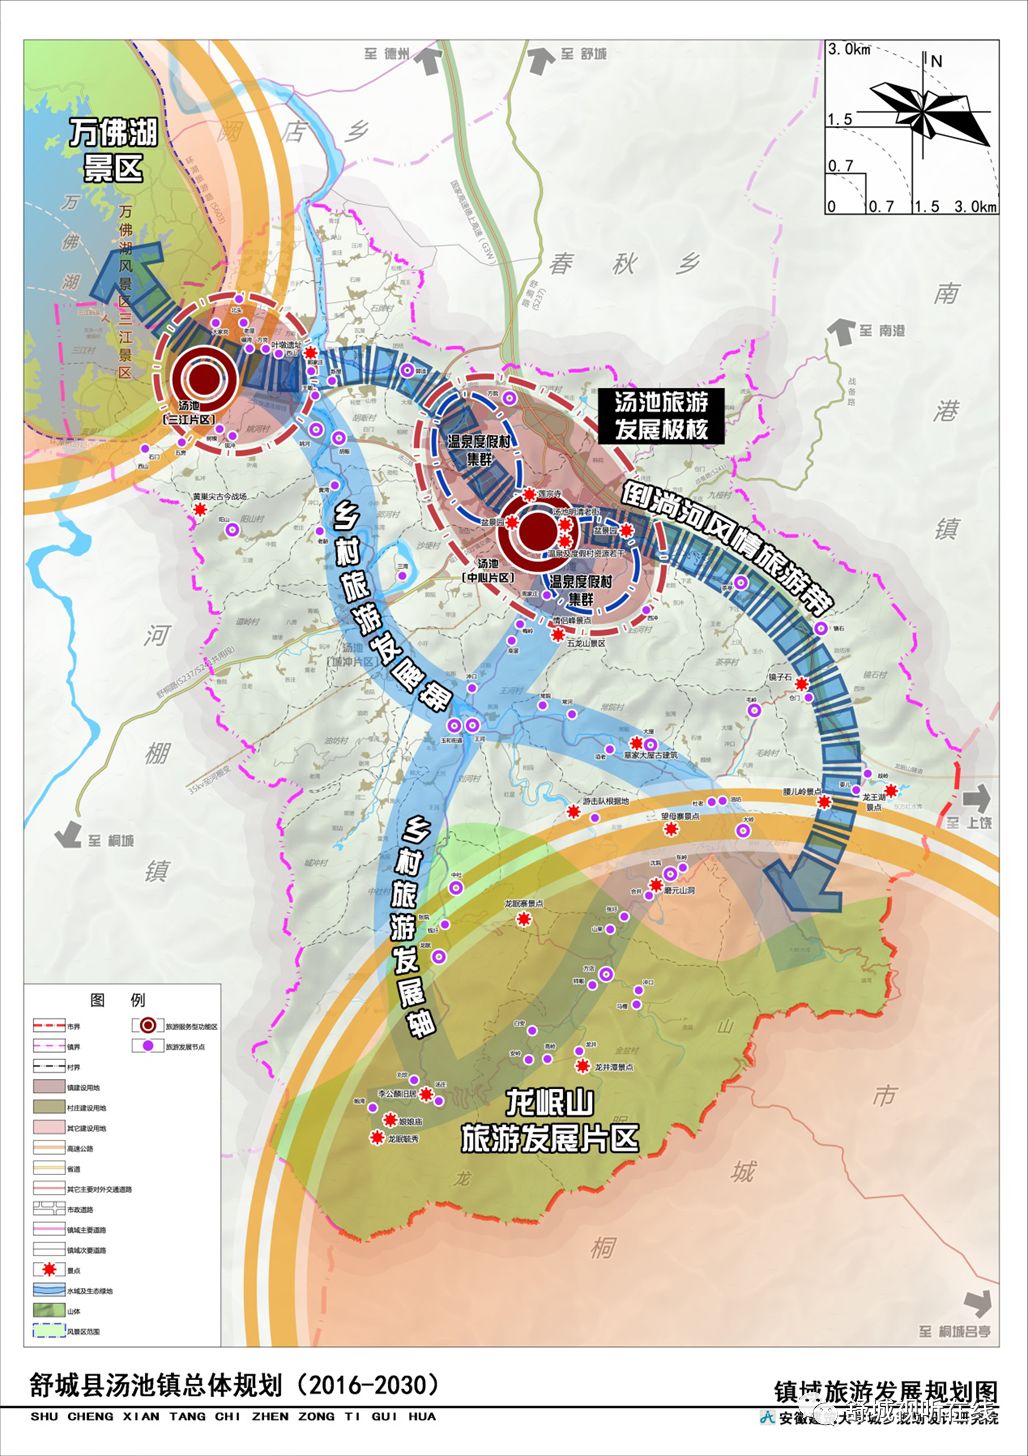 舒城:汤池镇总体规划(2016-2030)》出炉!(附规划图)